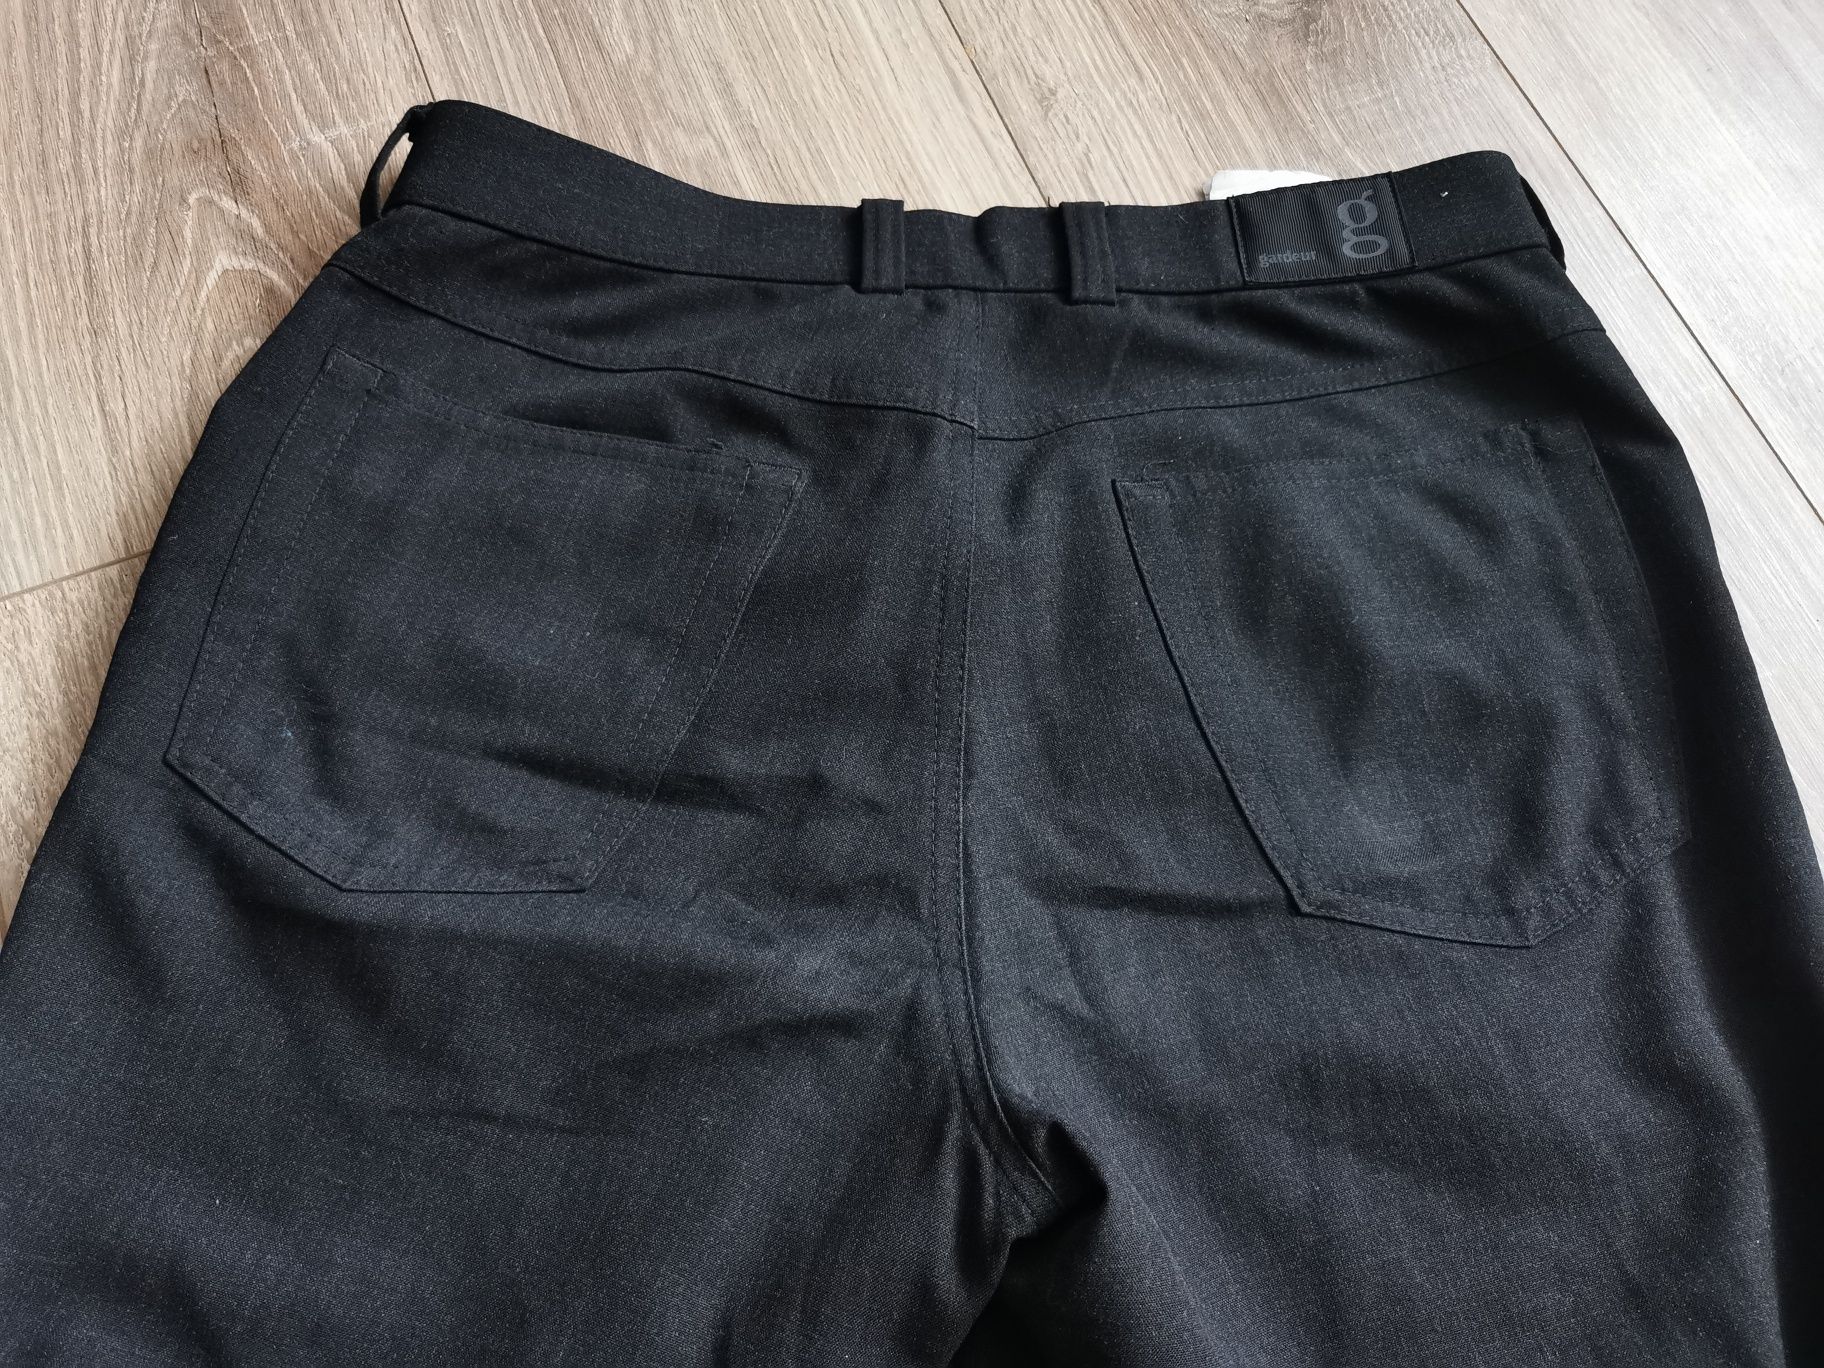 Продам штаны джынсы брюки Grosse made in Germany